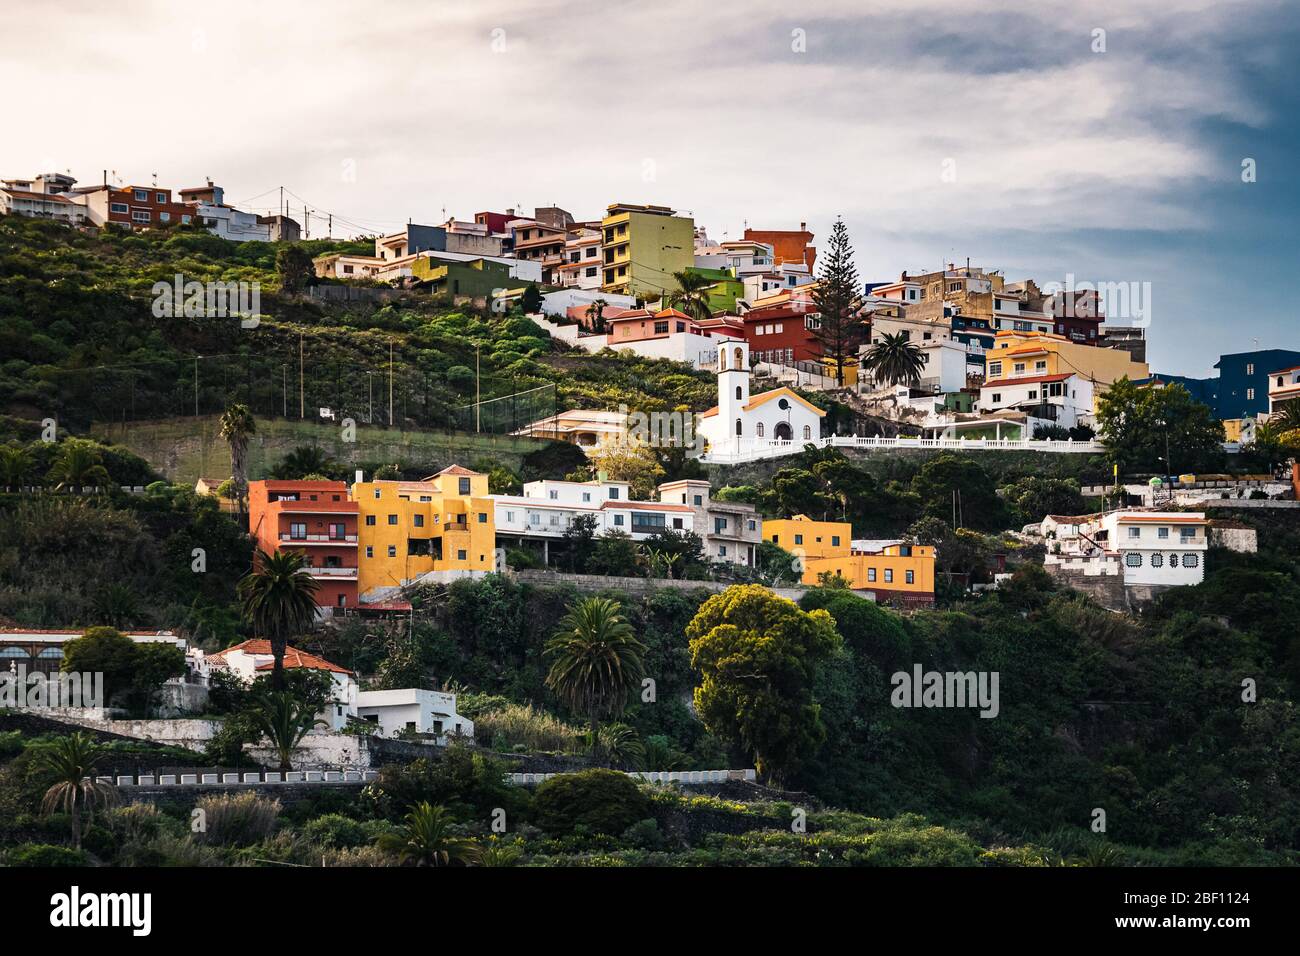 Bunte Häuser auf einem terrassenförmig angelegten Hügel in der Nähe von Icod de los Vinos Dorf im Norden von Teneriffa, Kanarische Inseln, Spanien an einem bewölkten Winternachmittag Stockfoto